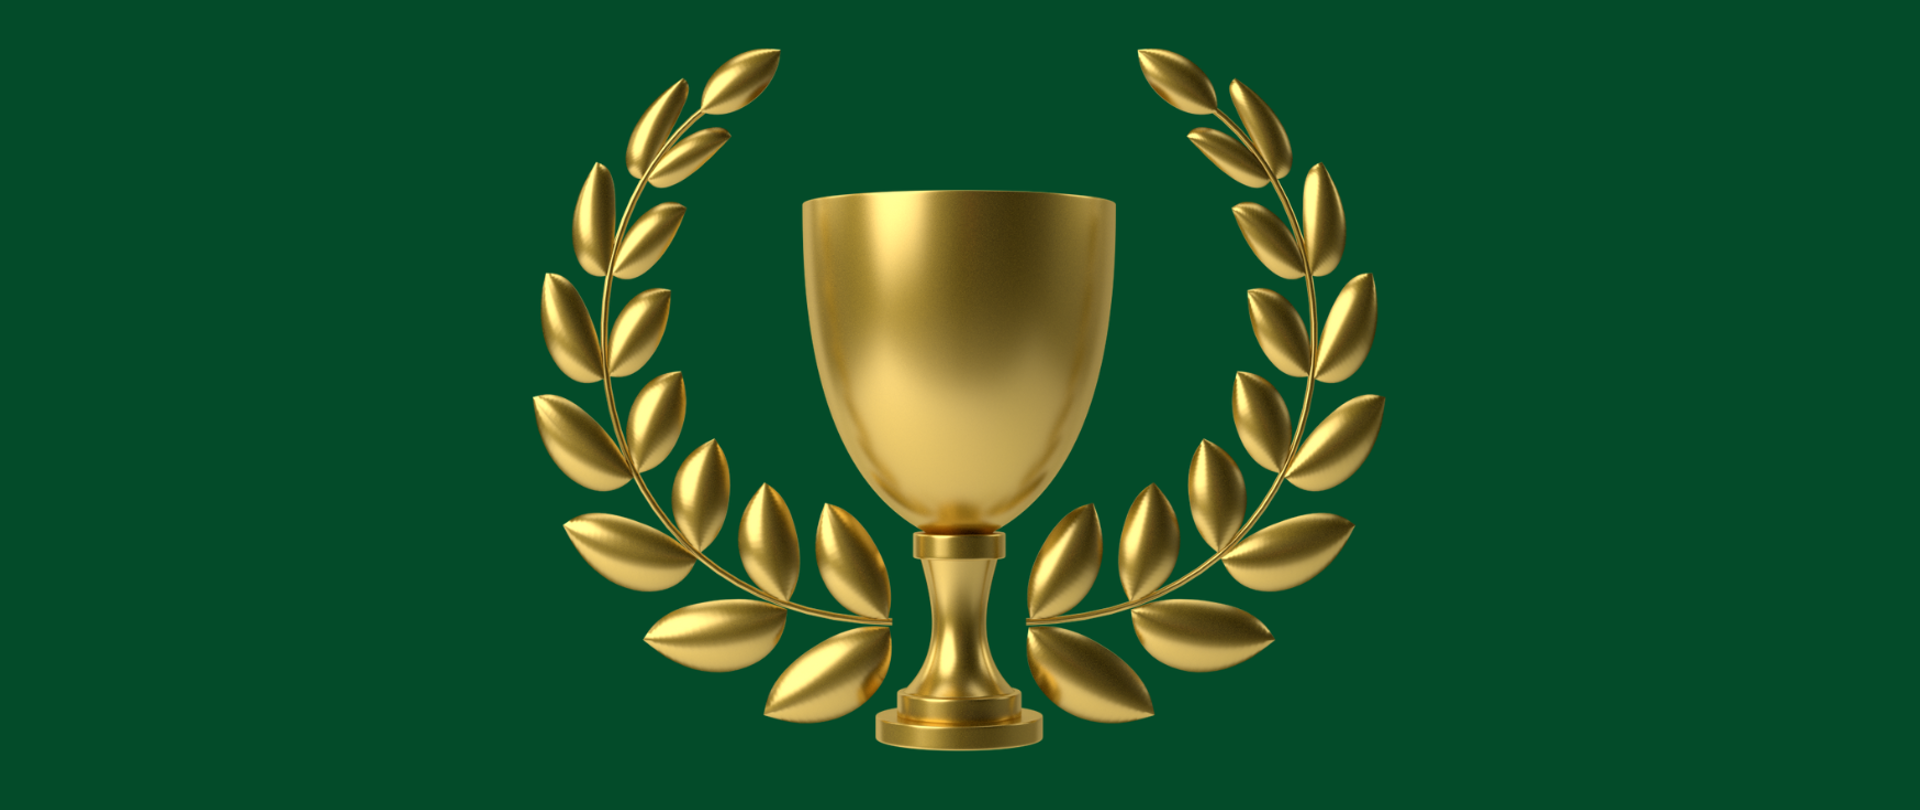 Puchar otoczony wieńcem laurowym w kolorze złotym na zielonym tle